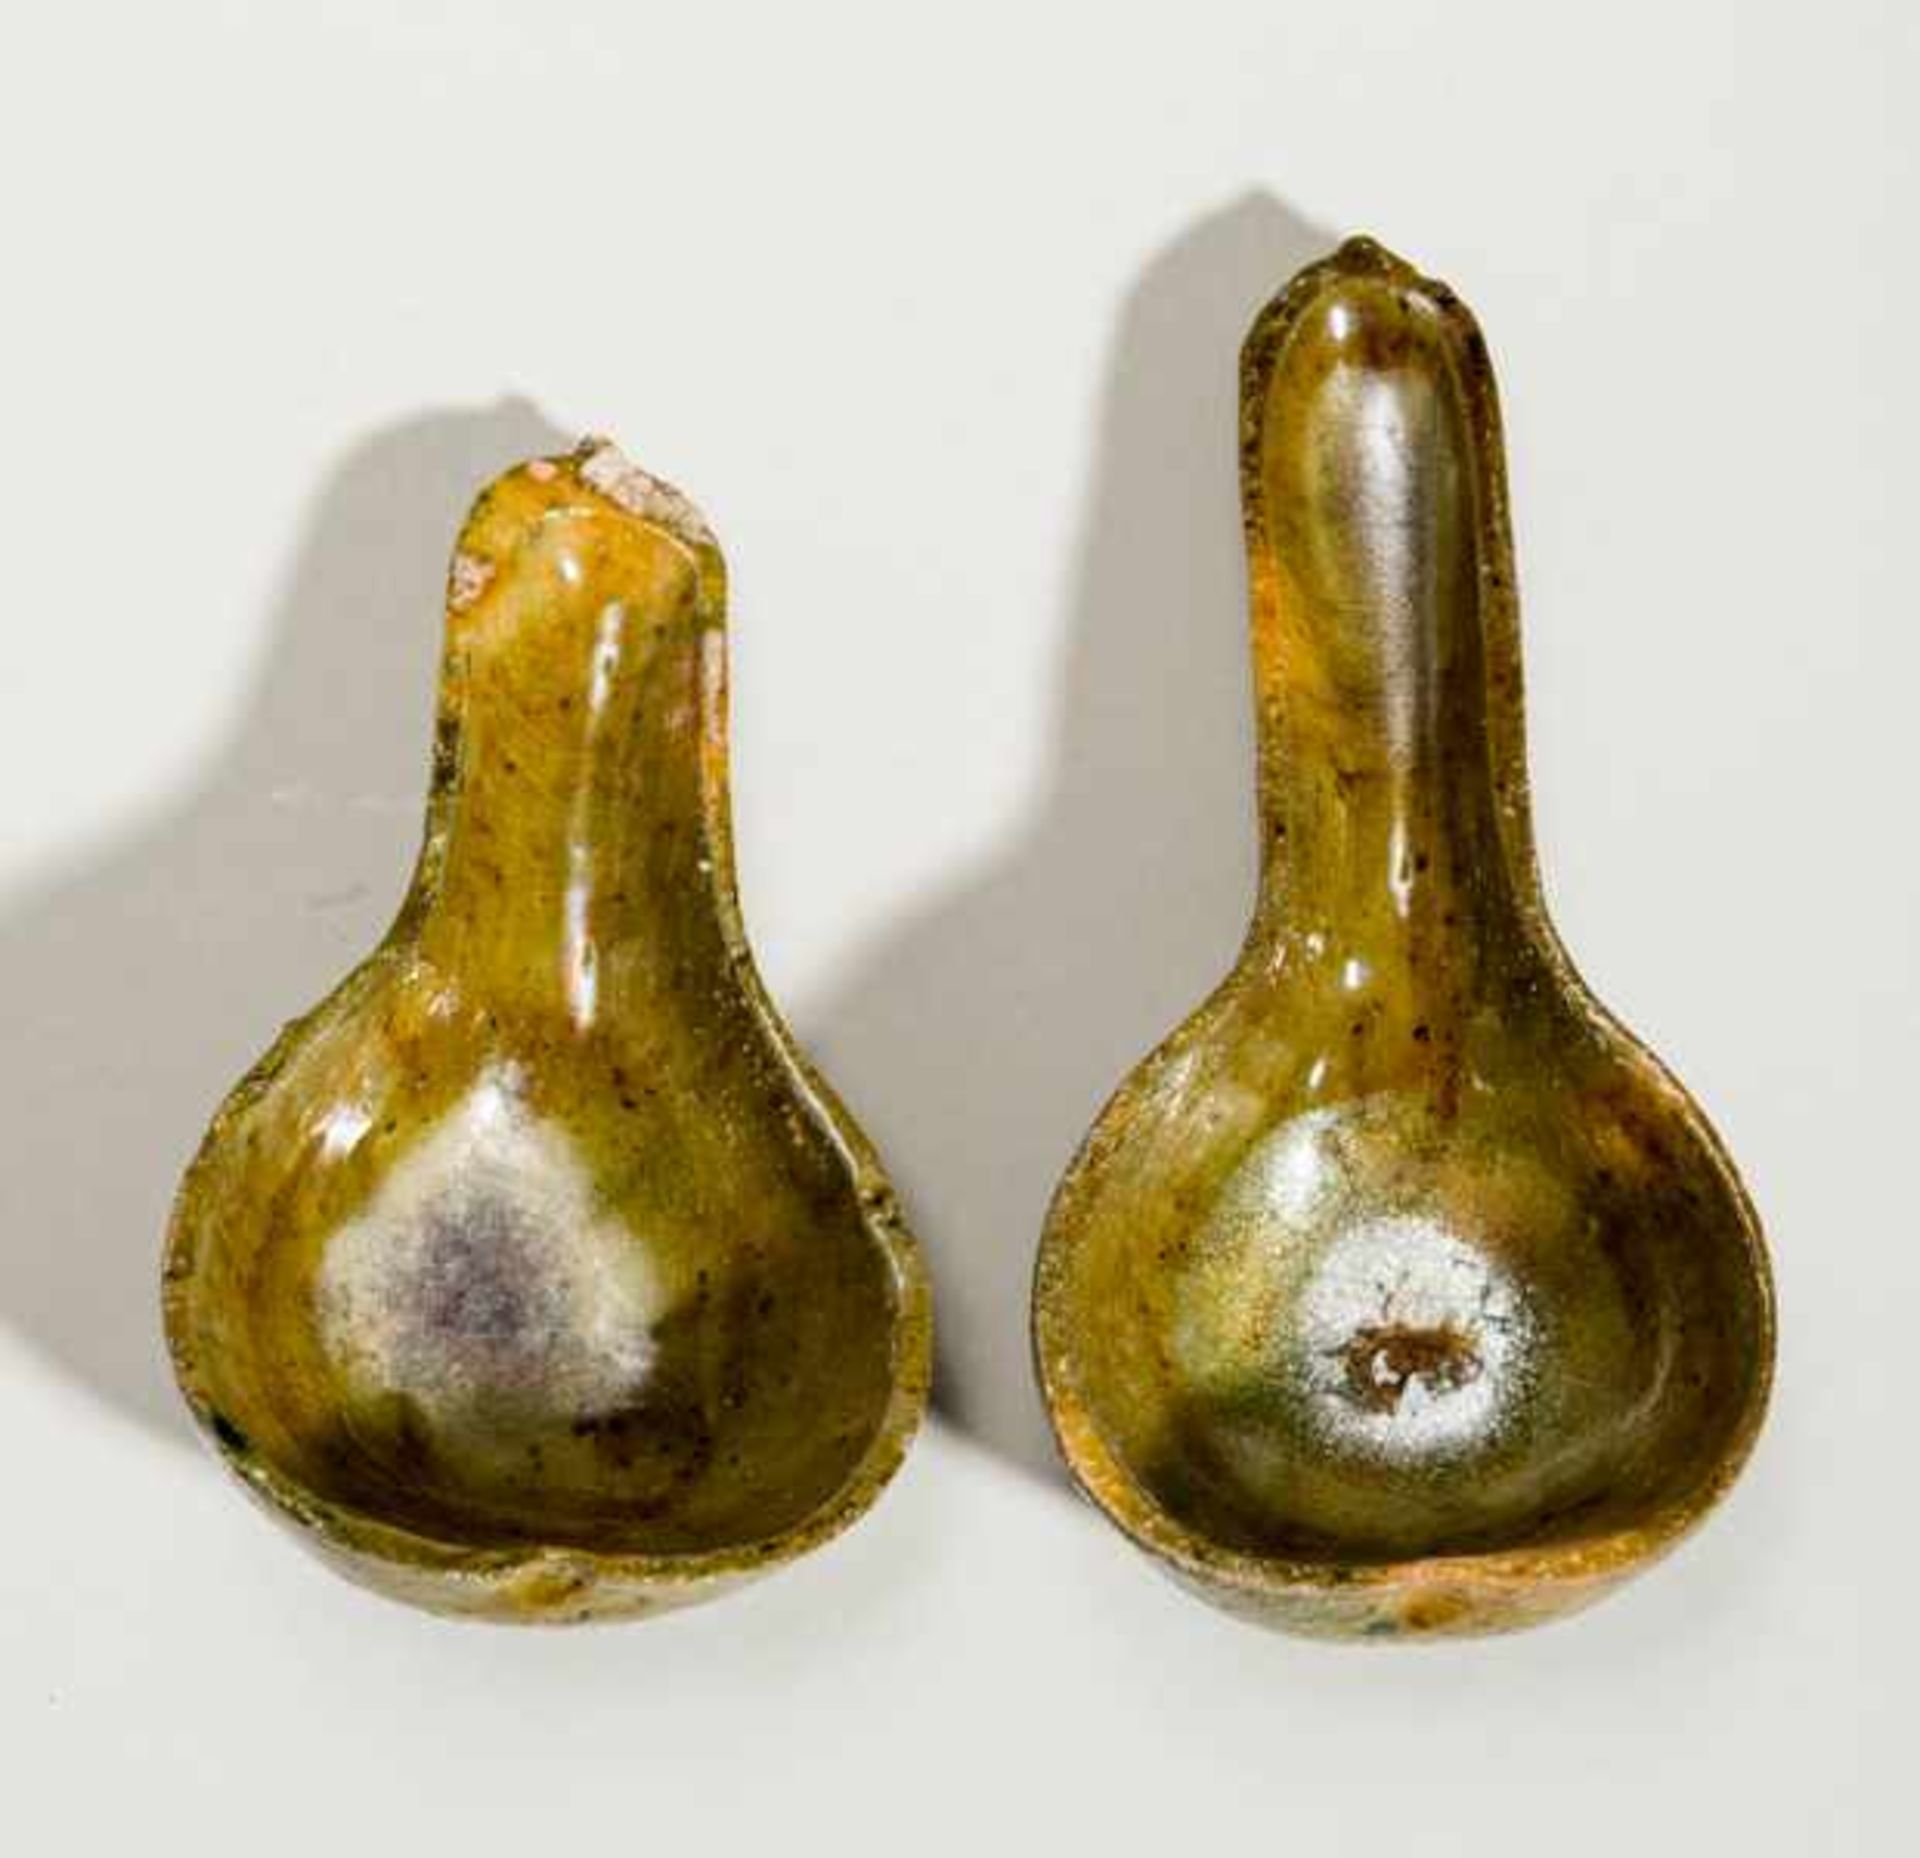 TWO SPOONS Glazed ceramic. China, Han dynasty (206 BCE - 220 CE)兩支陶勺A remarkably beautiful glaze